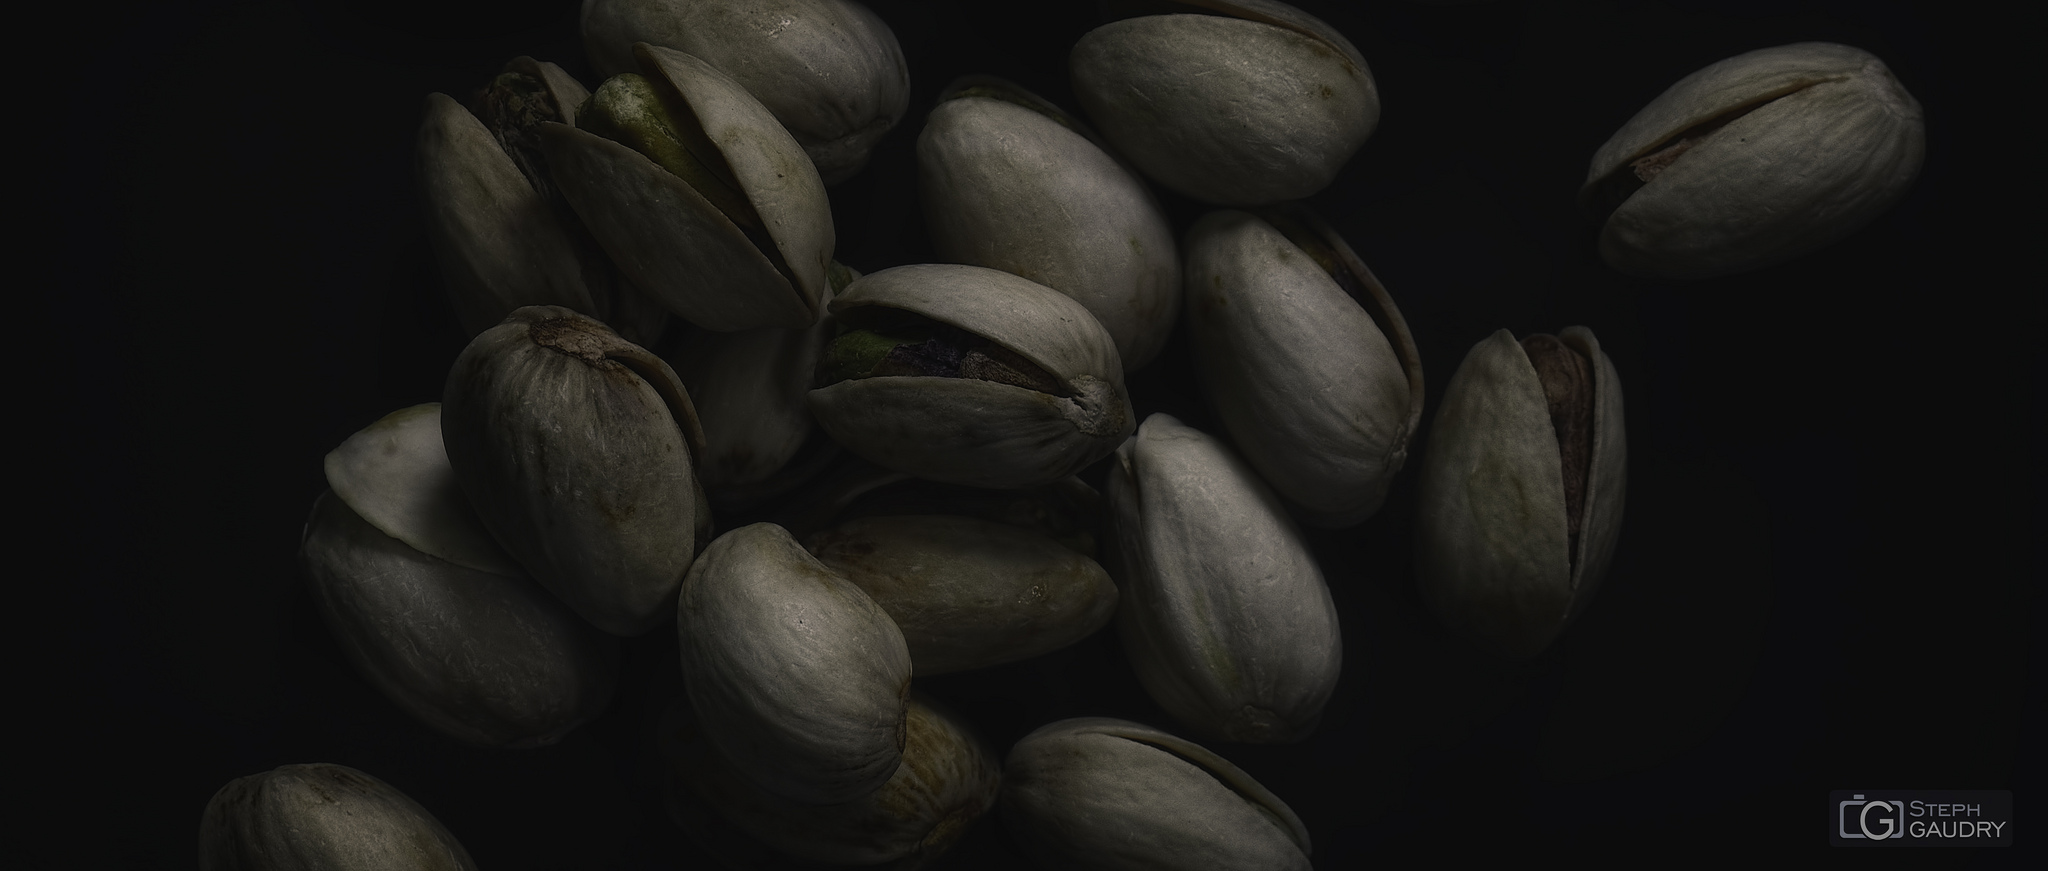 Roasted pistachio seeds with shells [Cliquez pour lancer le diaporama]